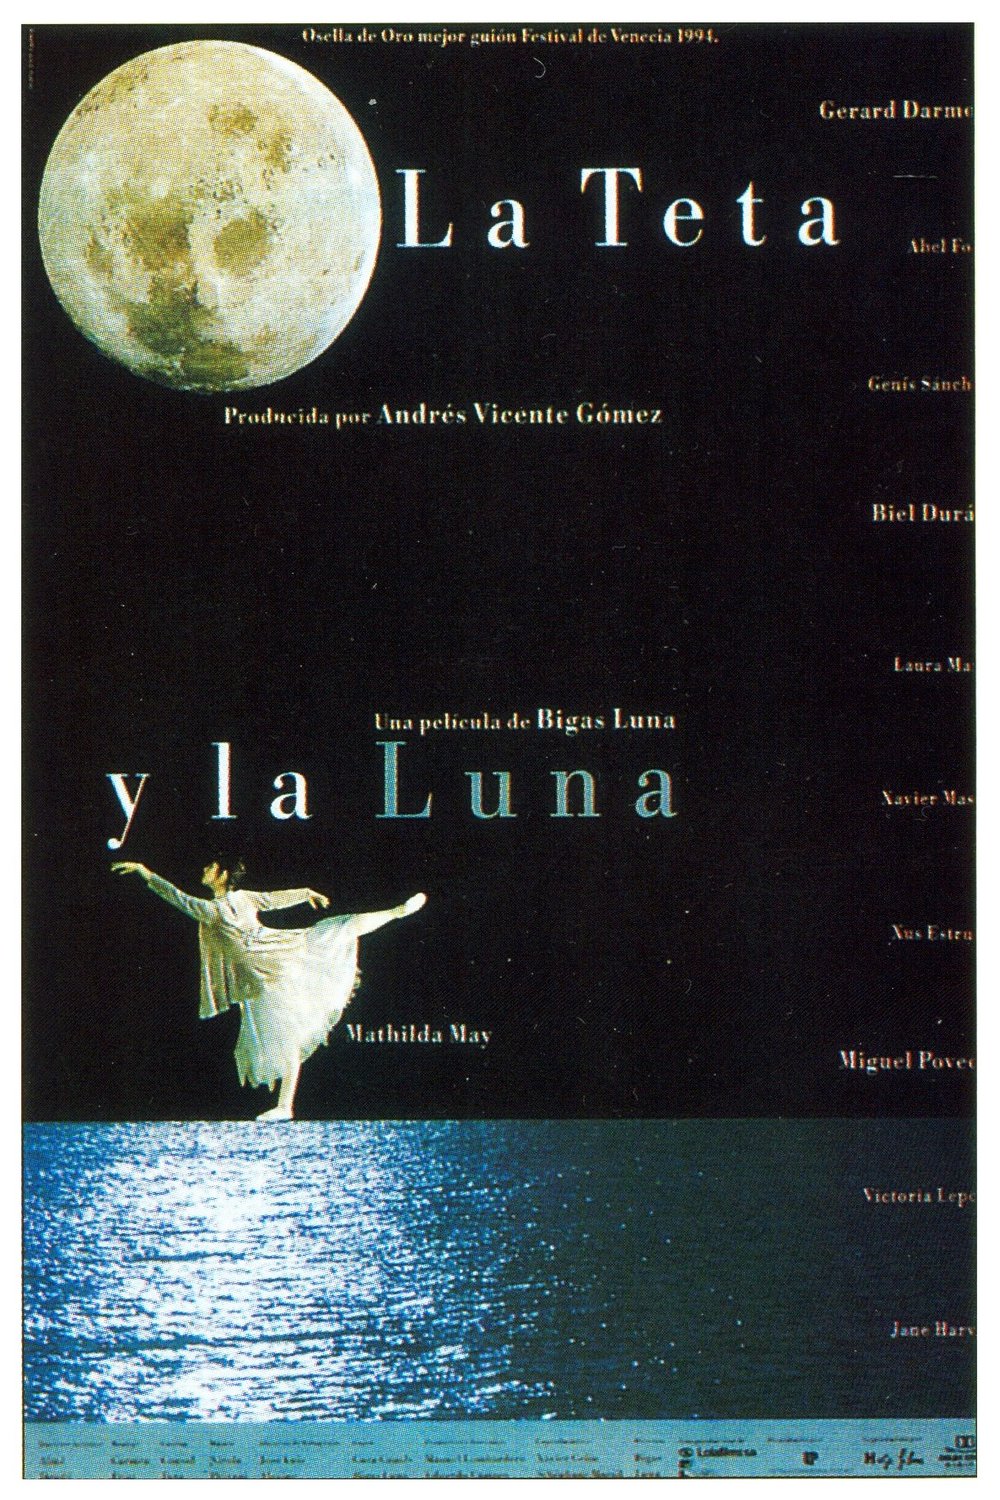 Catalan poster of the movie La teta y la luna